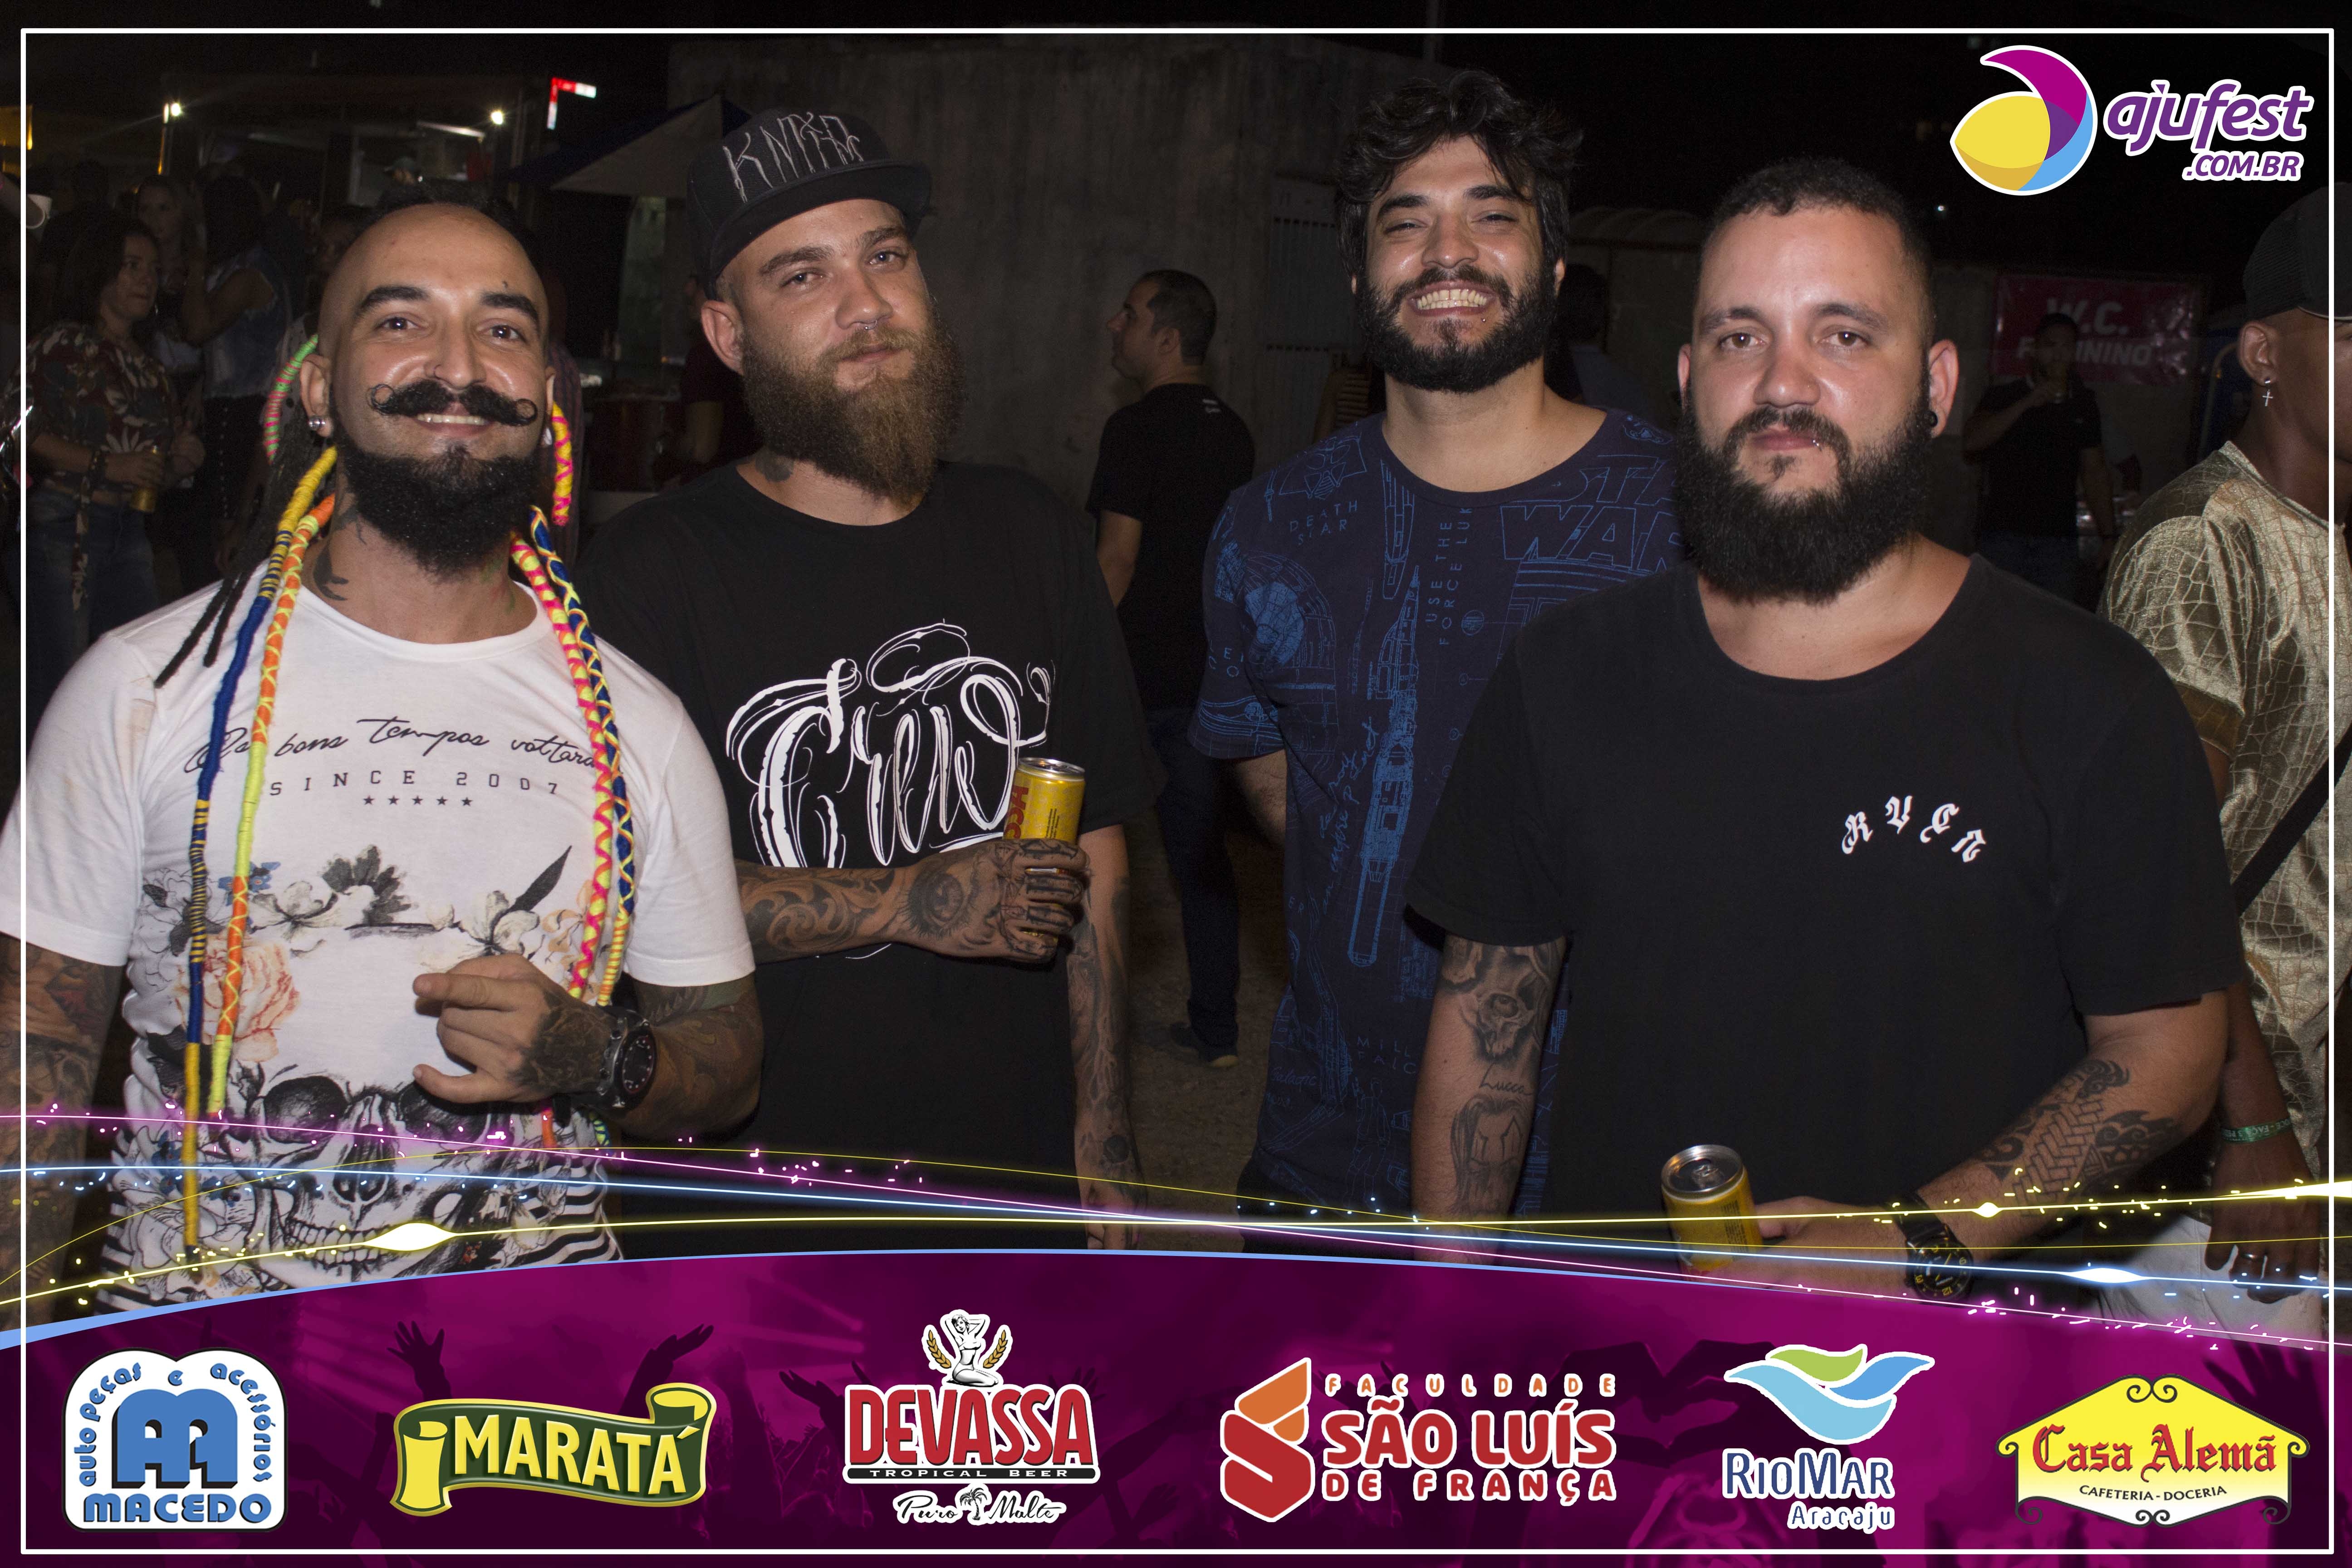 1_Forrozão-Entre-Amigos-2019-Aracaju-Ajufest-55